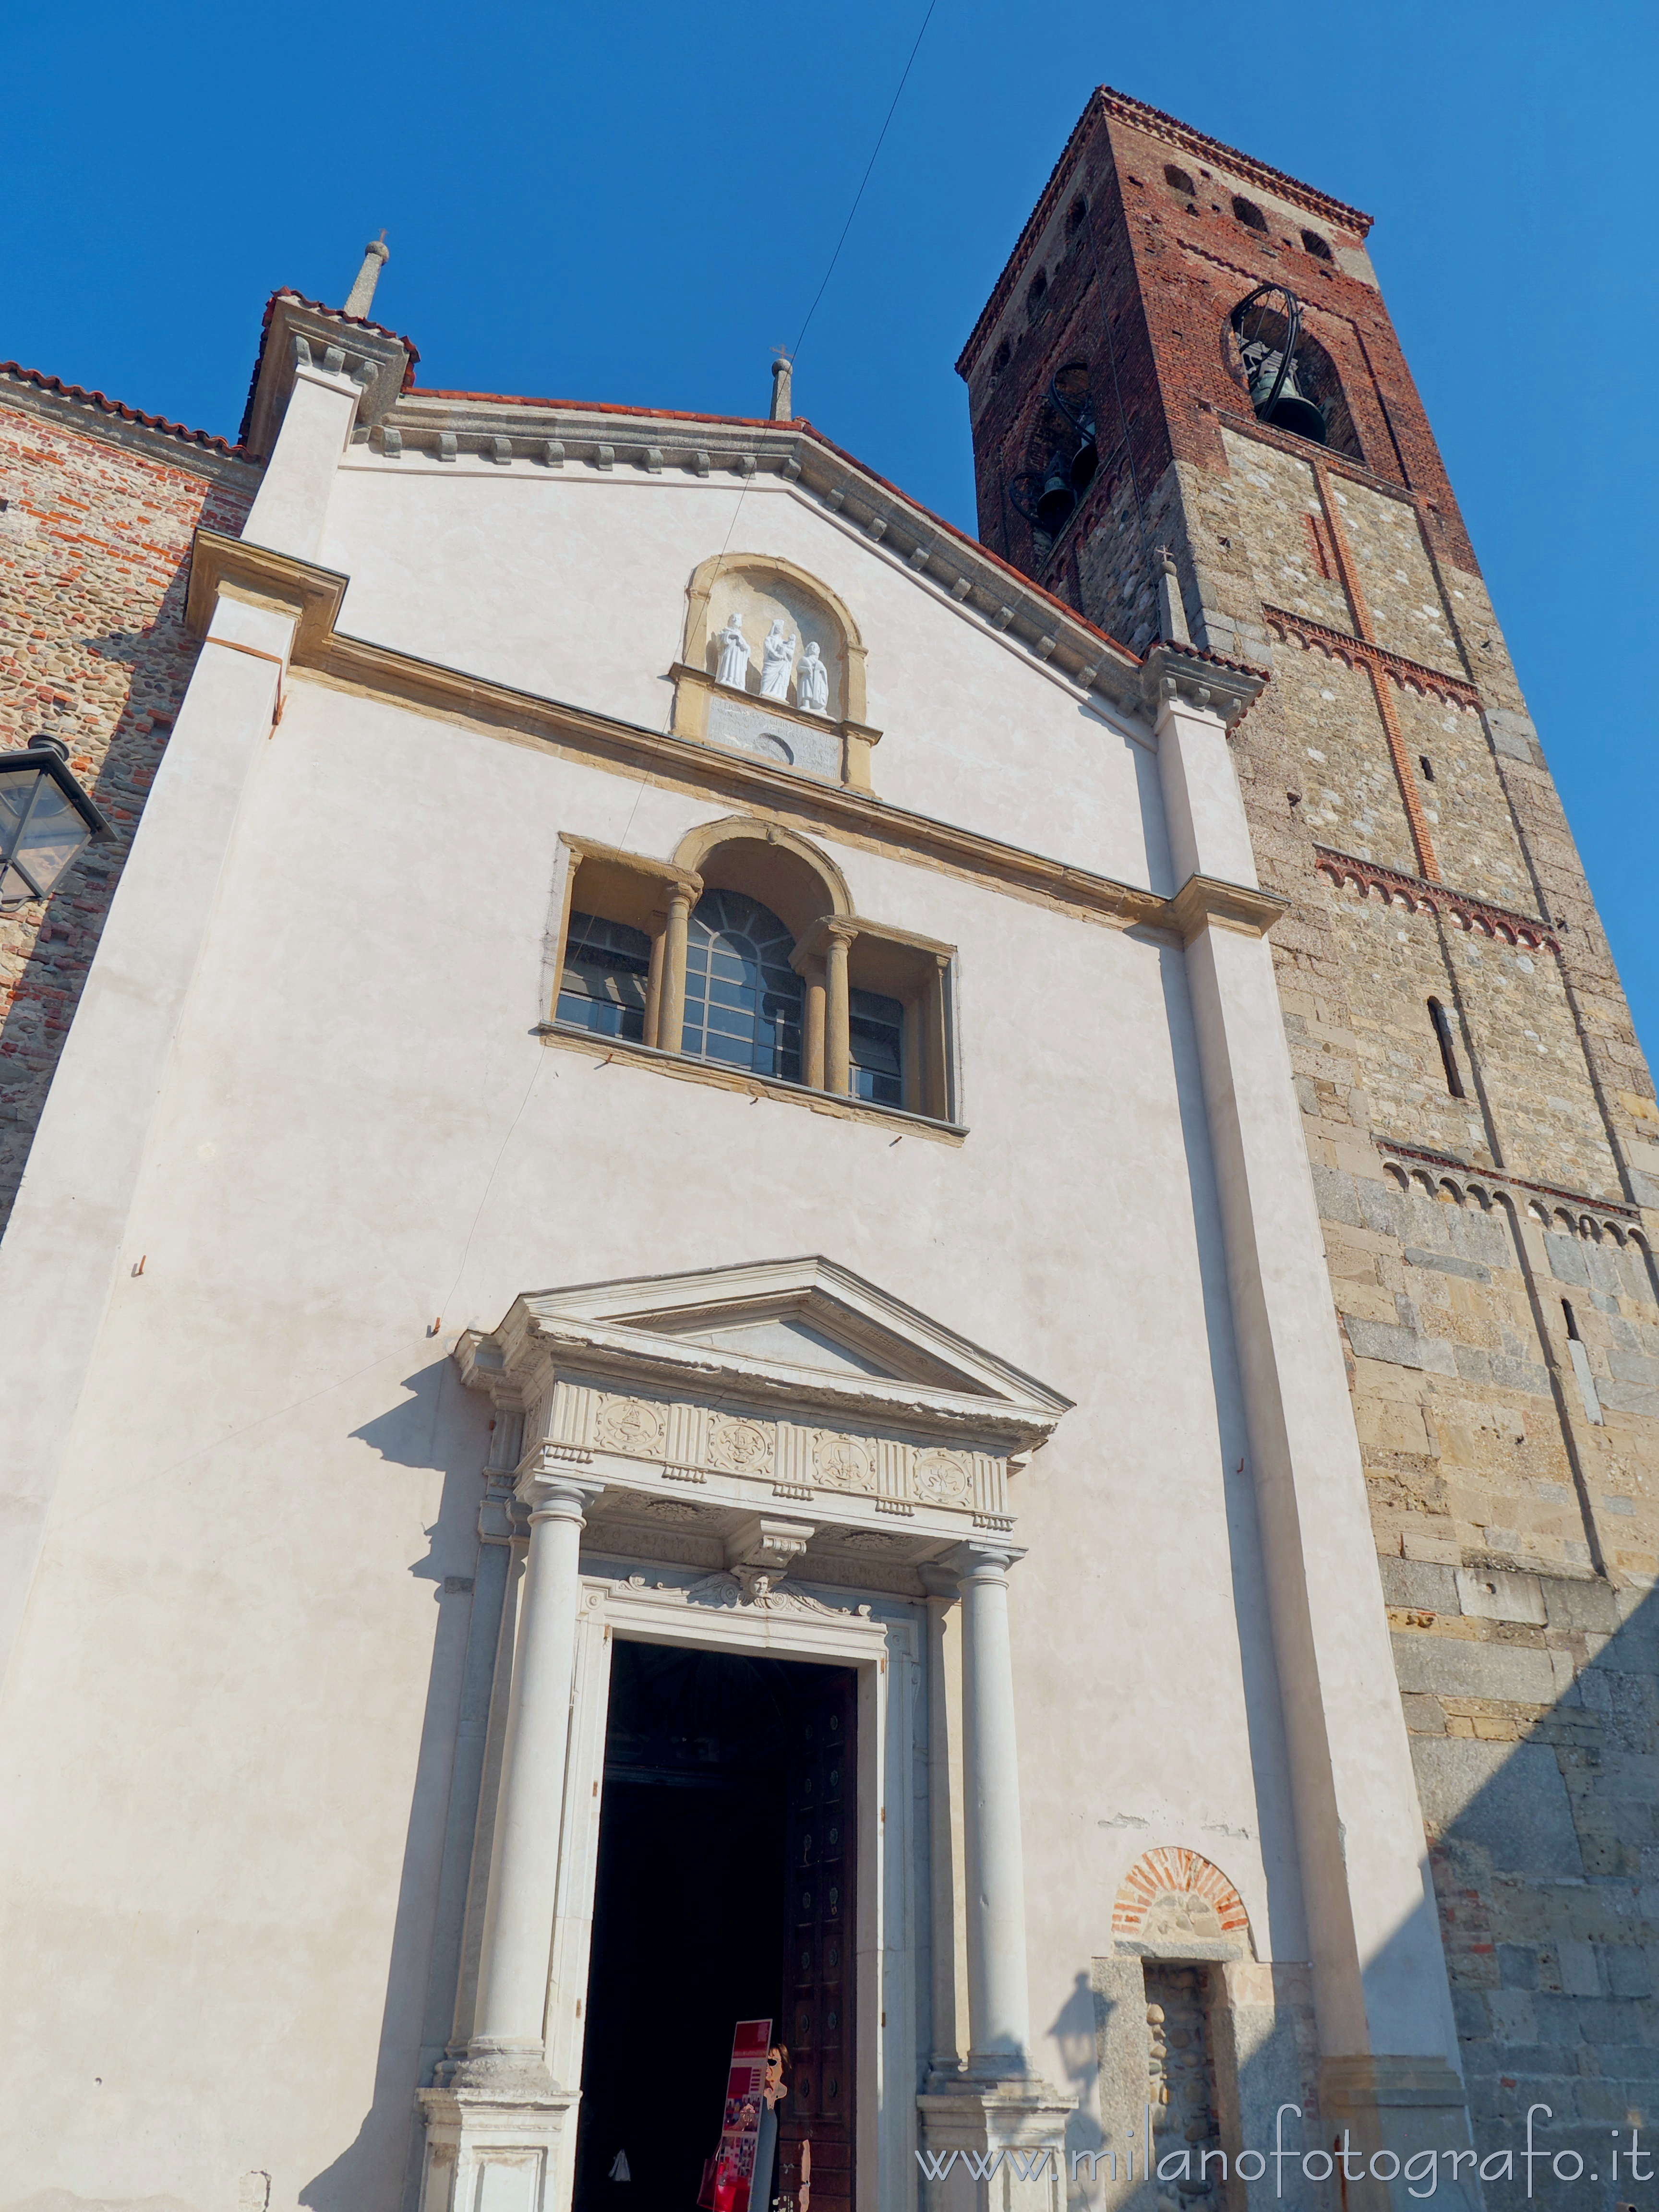 Vimercate (Monza e Brianza, Italy): Facade of the Church of Santo Stefano - Vimercate (Monza e Brianza, Italy)